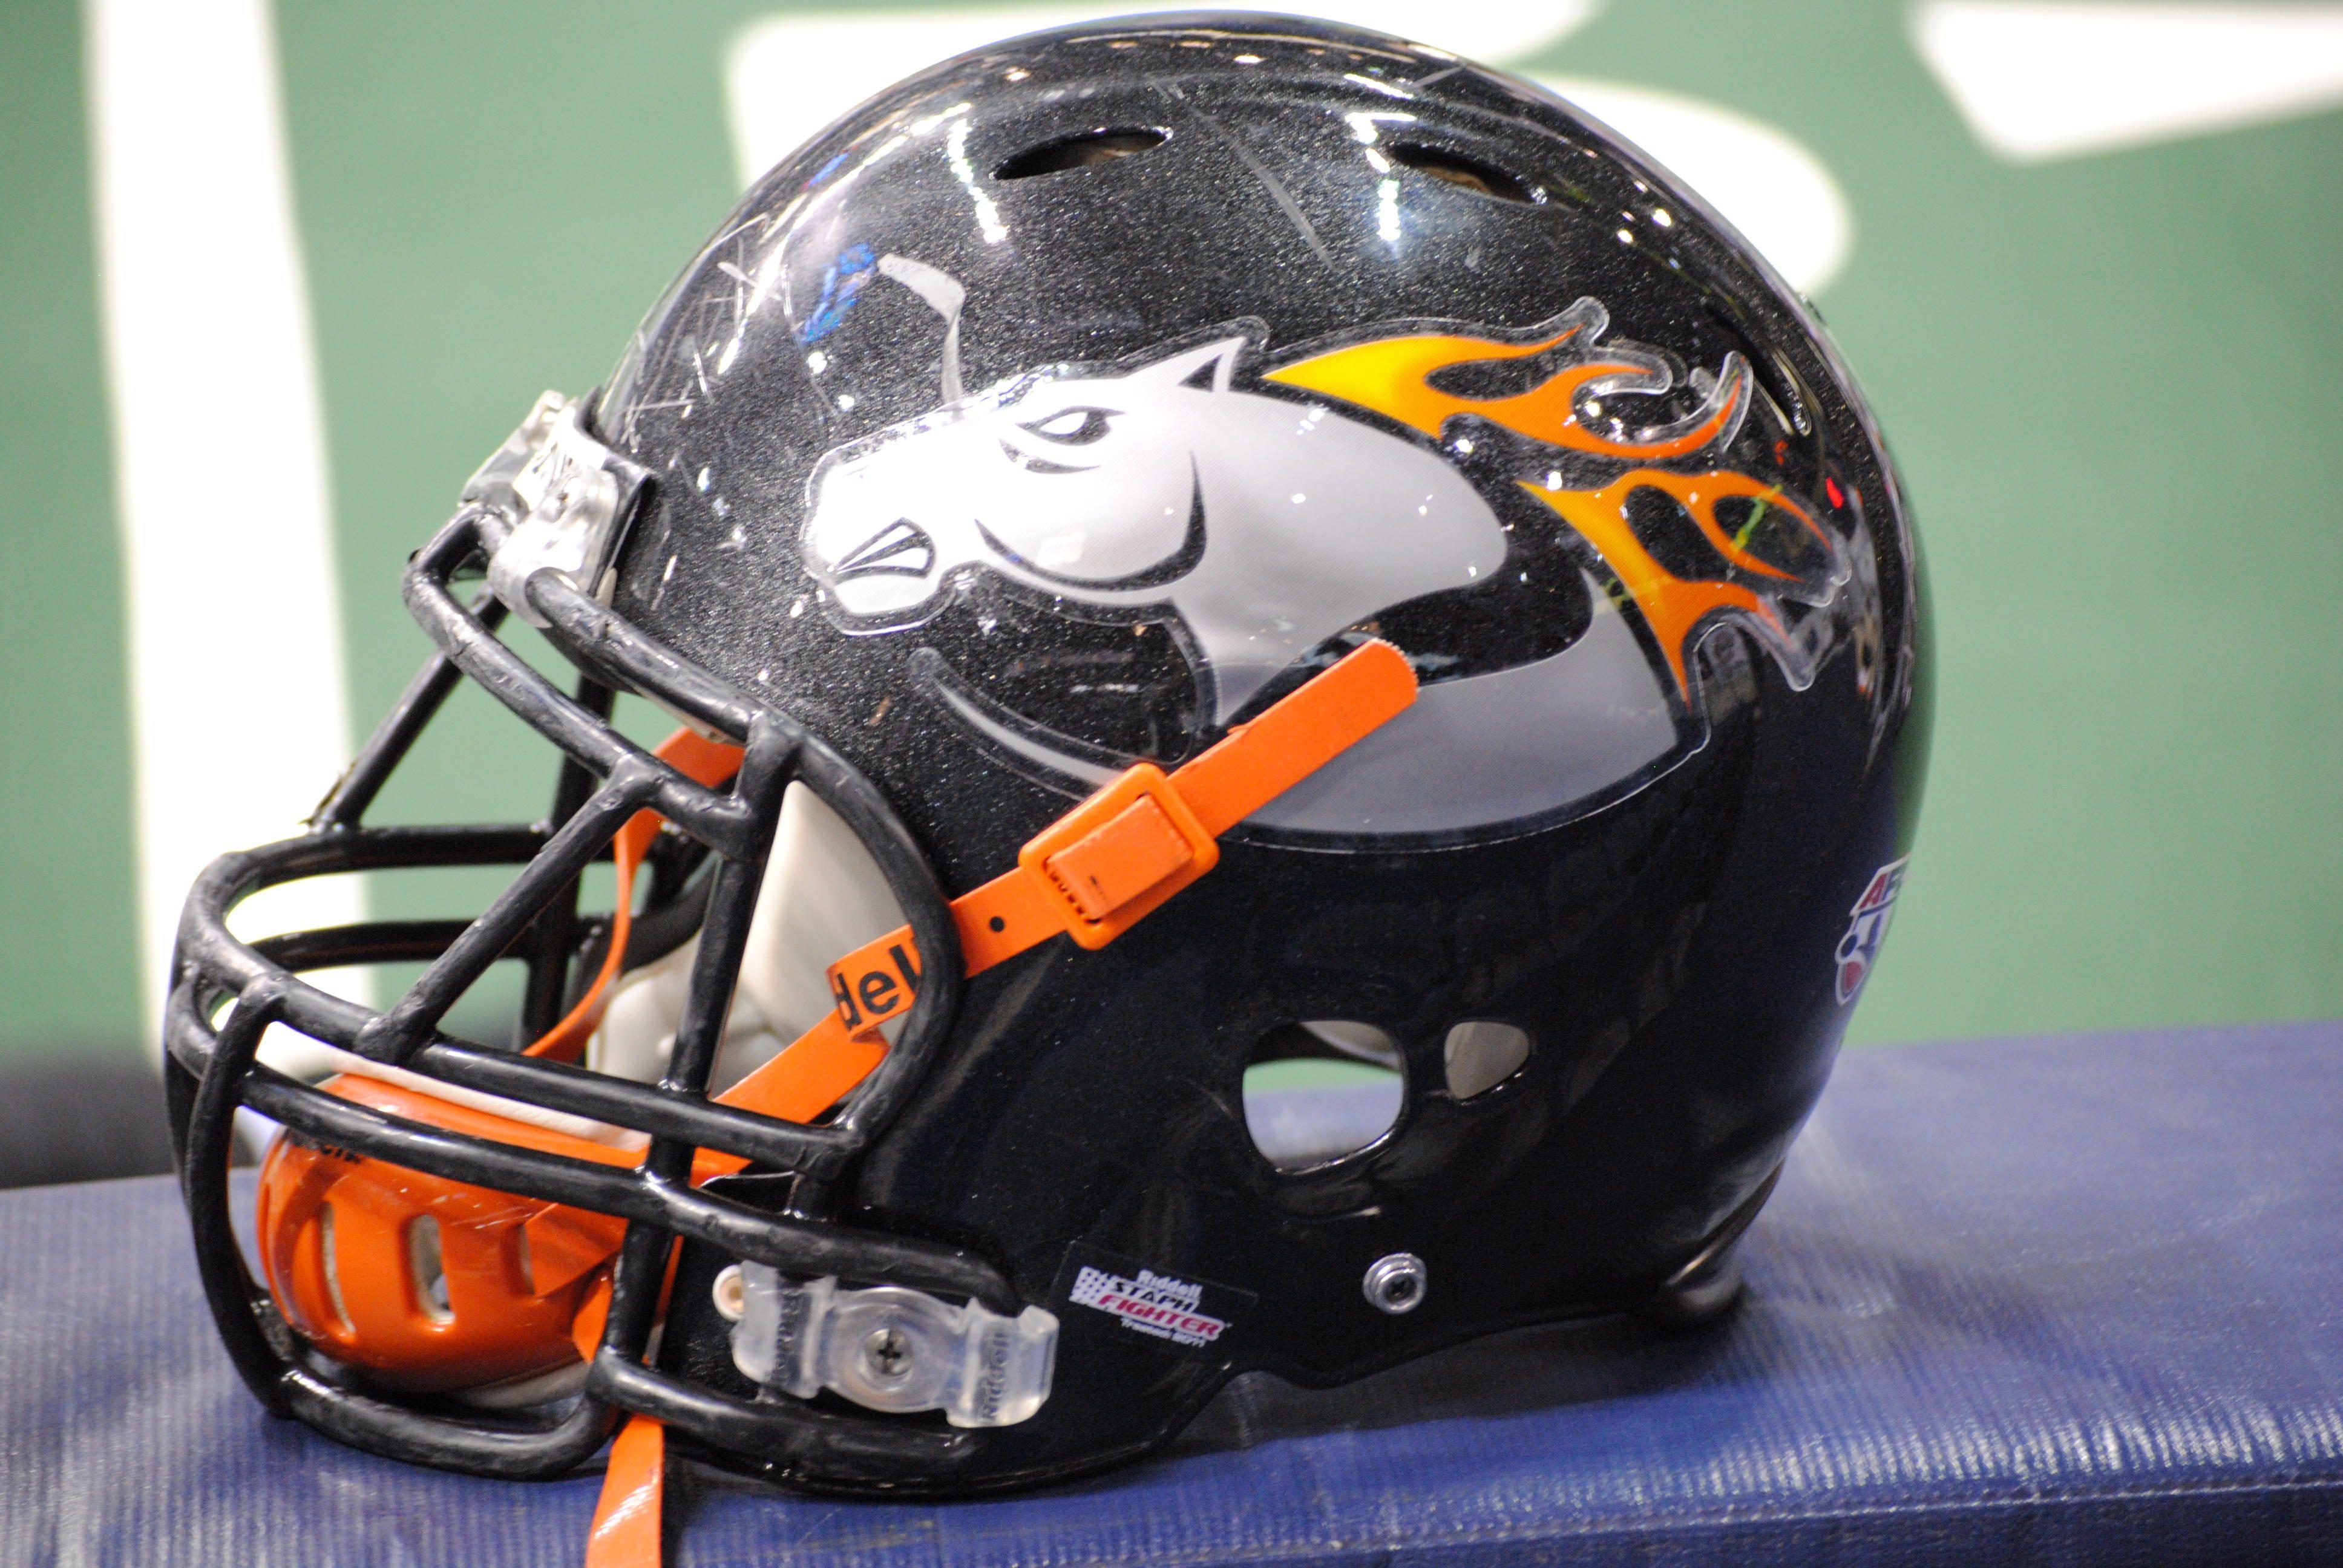 Mustang Football Helmet Logo - Milwaukee Mustangs helmet, 2011. The Mustangs have one